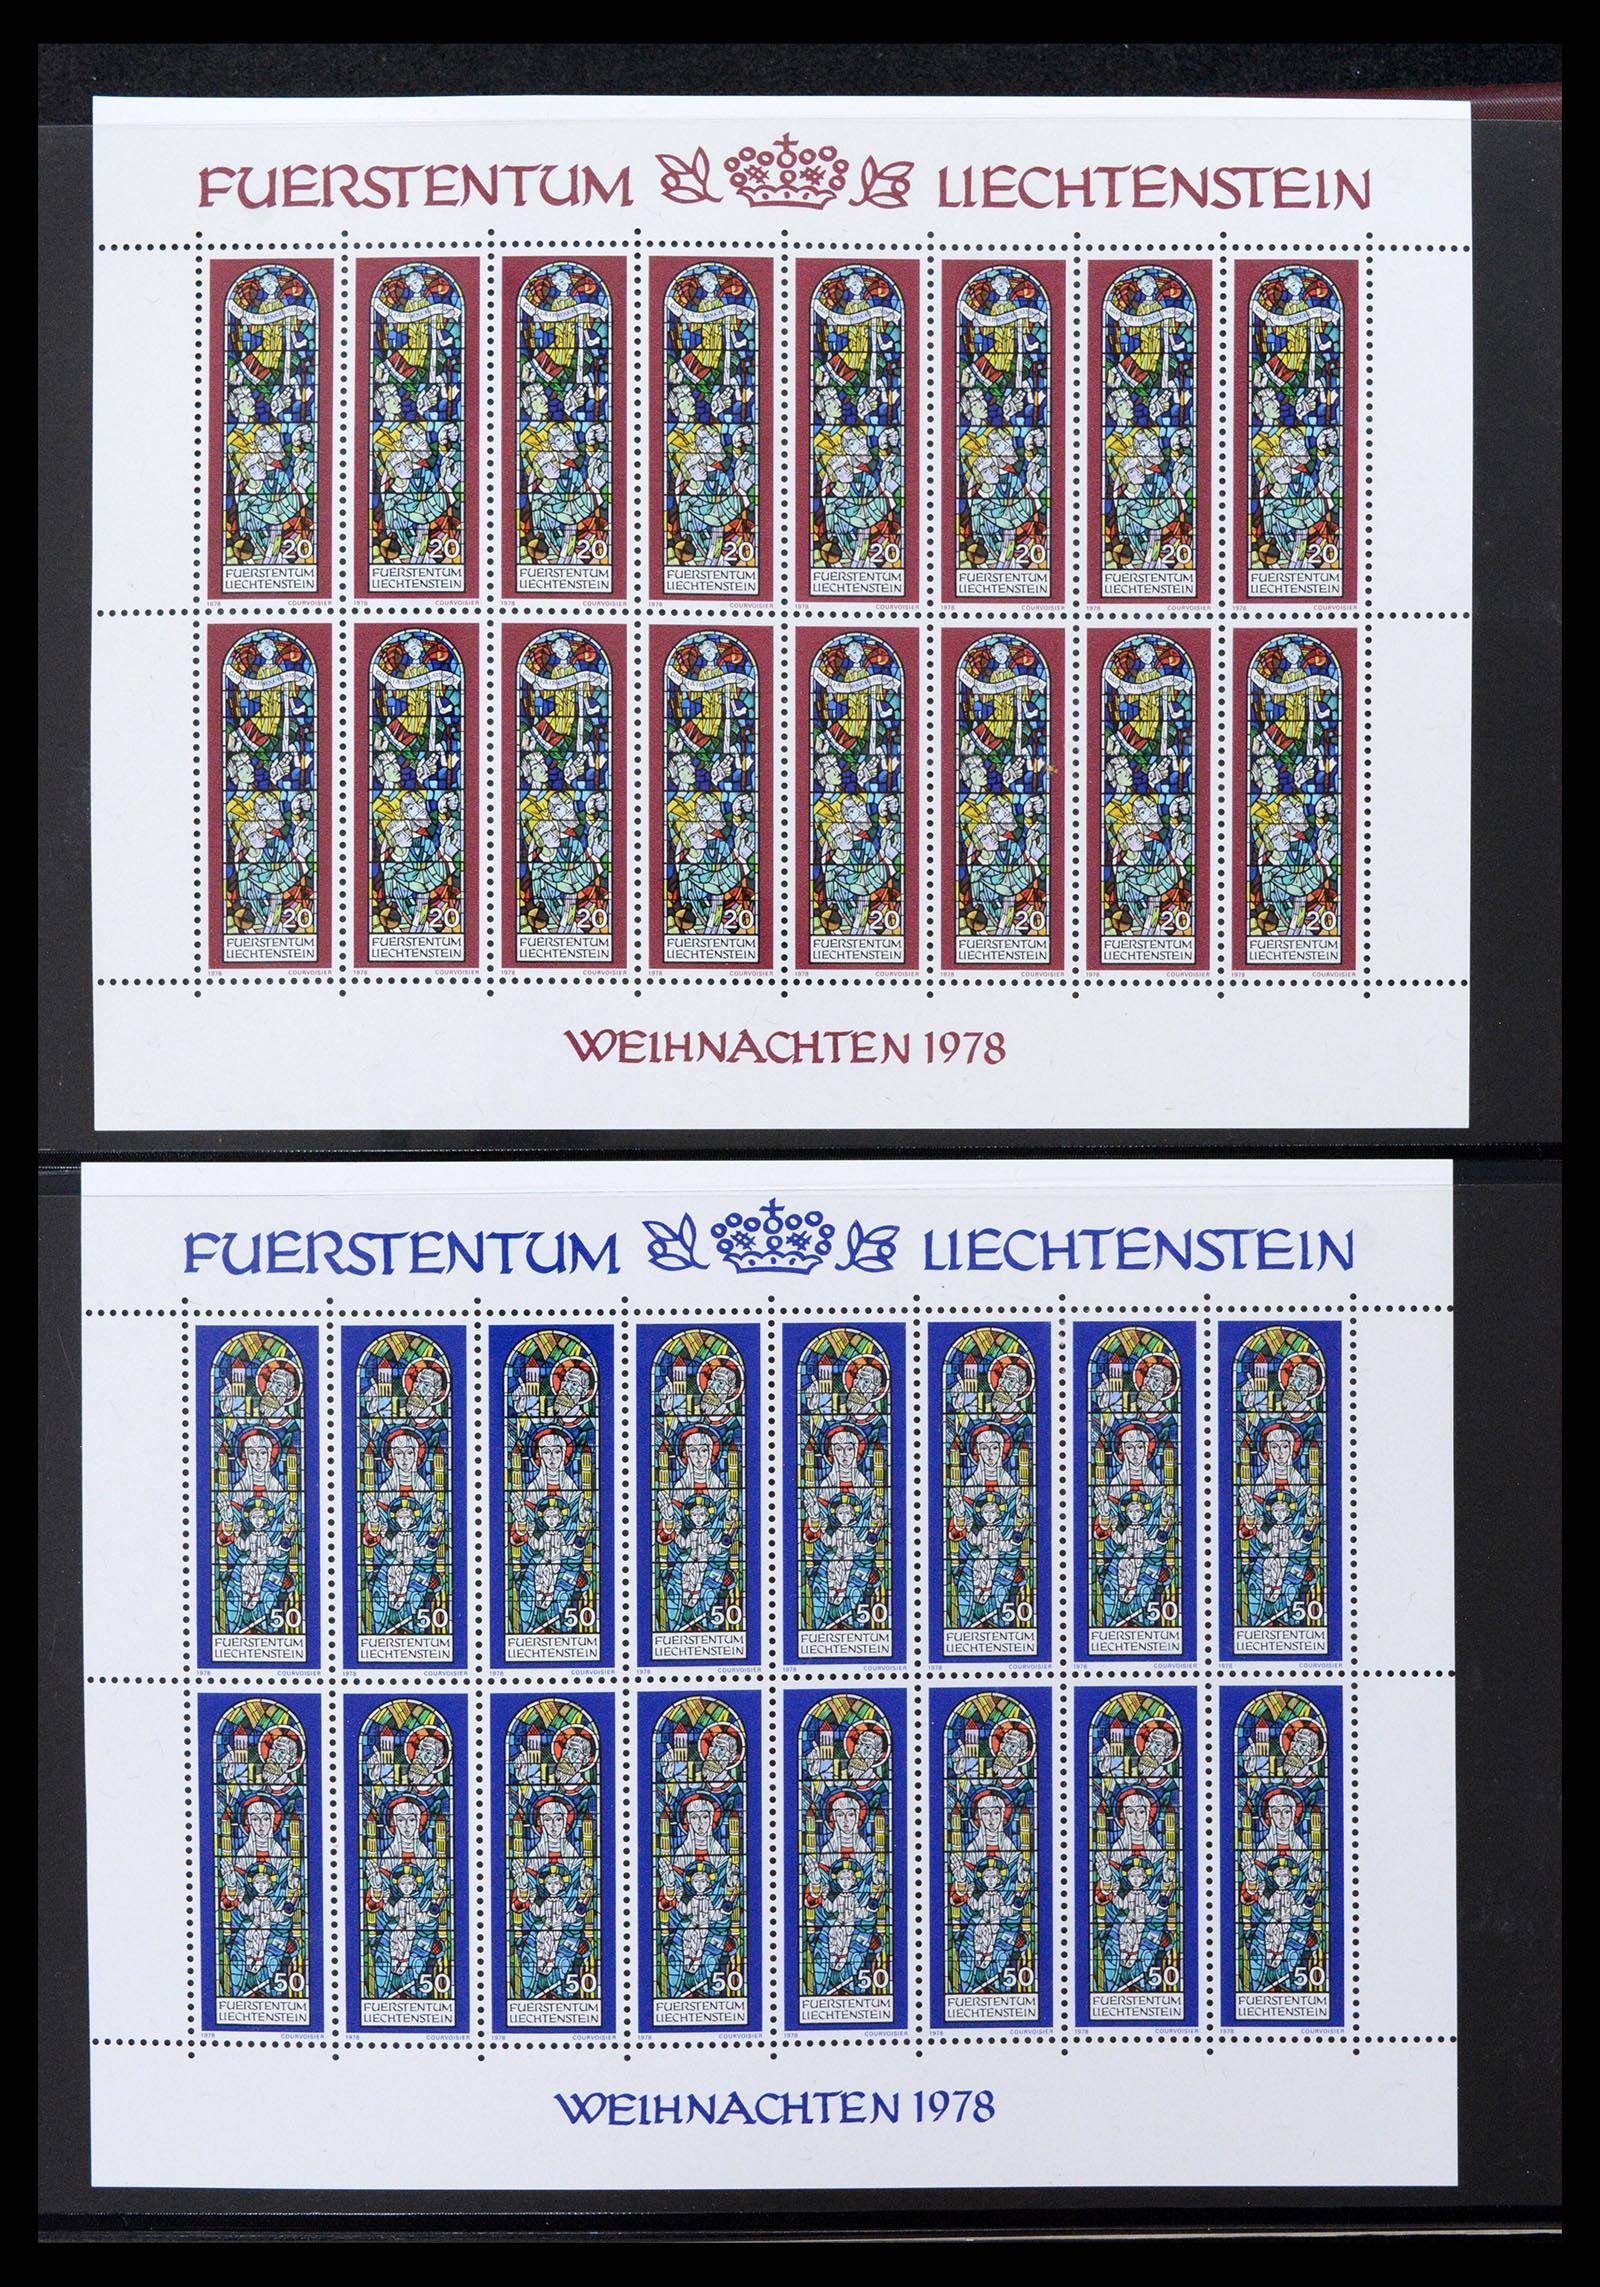 37293 076 - Stamp collection 37293 Liechtenstein 1912-2003.